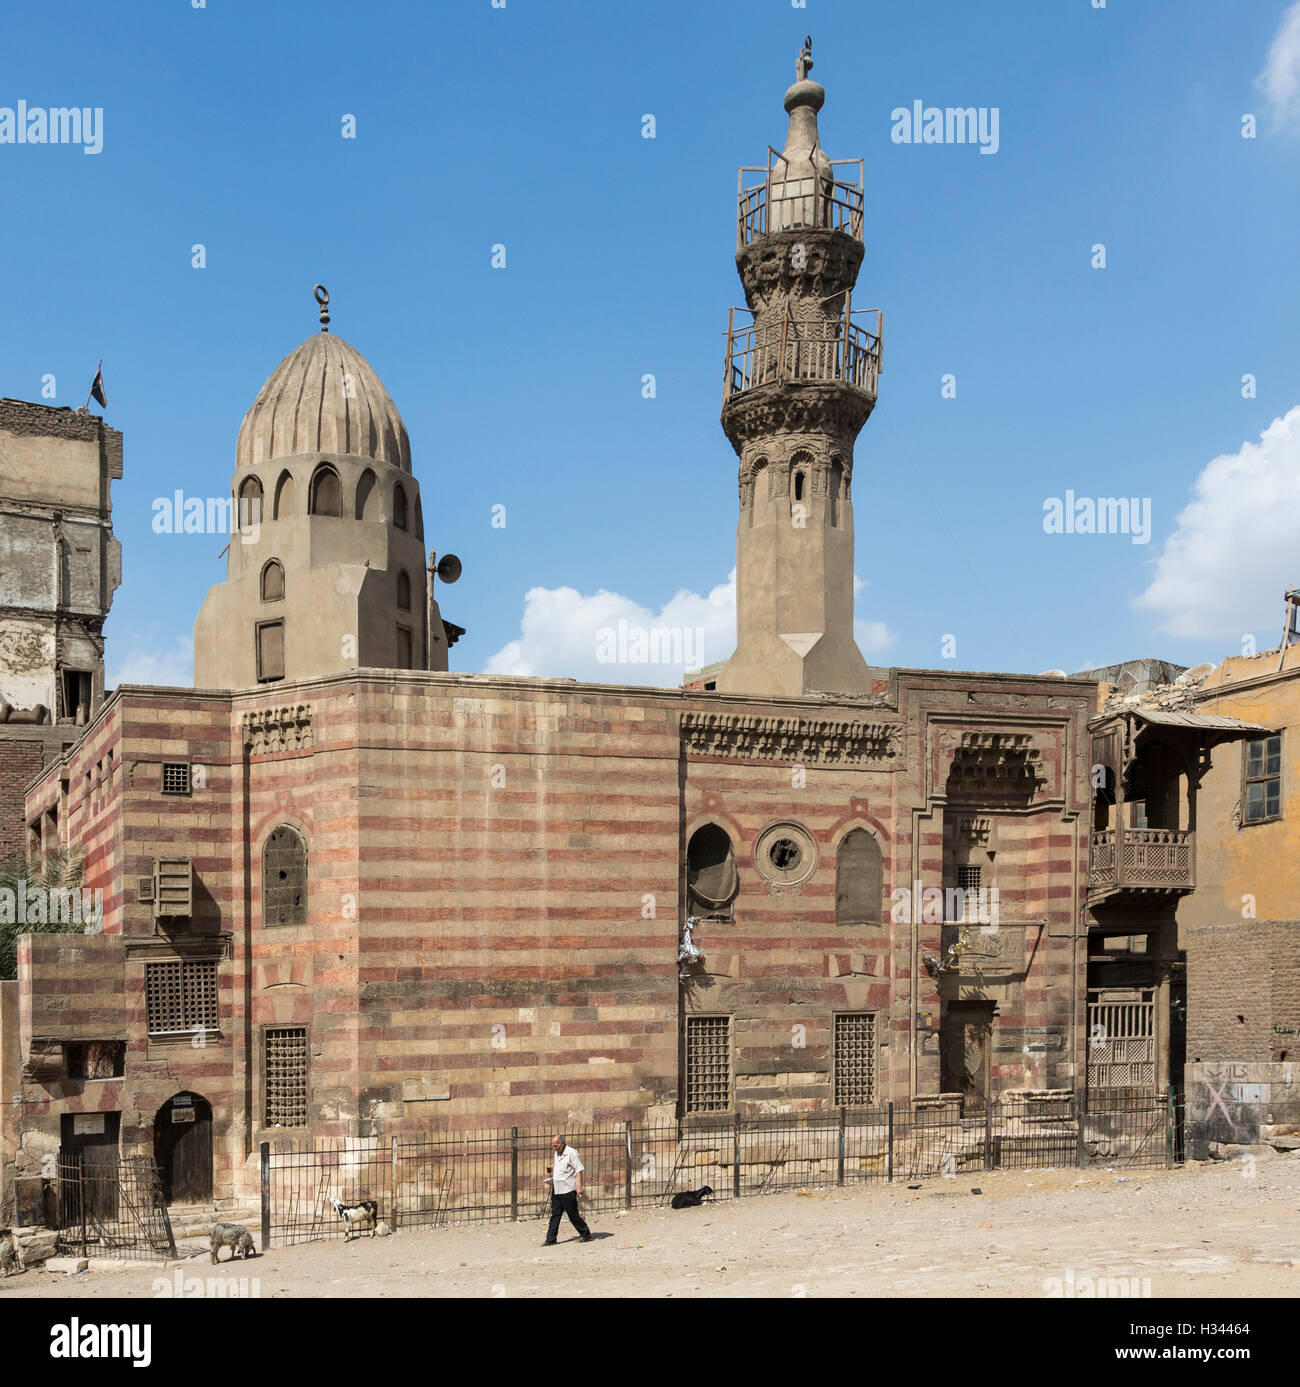 La façade extérieure, Le Caire, Egypte, la mosquée funéraire de Jawhar al-Lala (1430) Banque D'Images